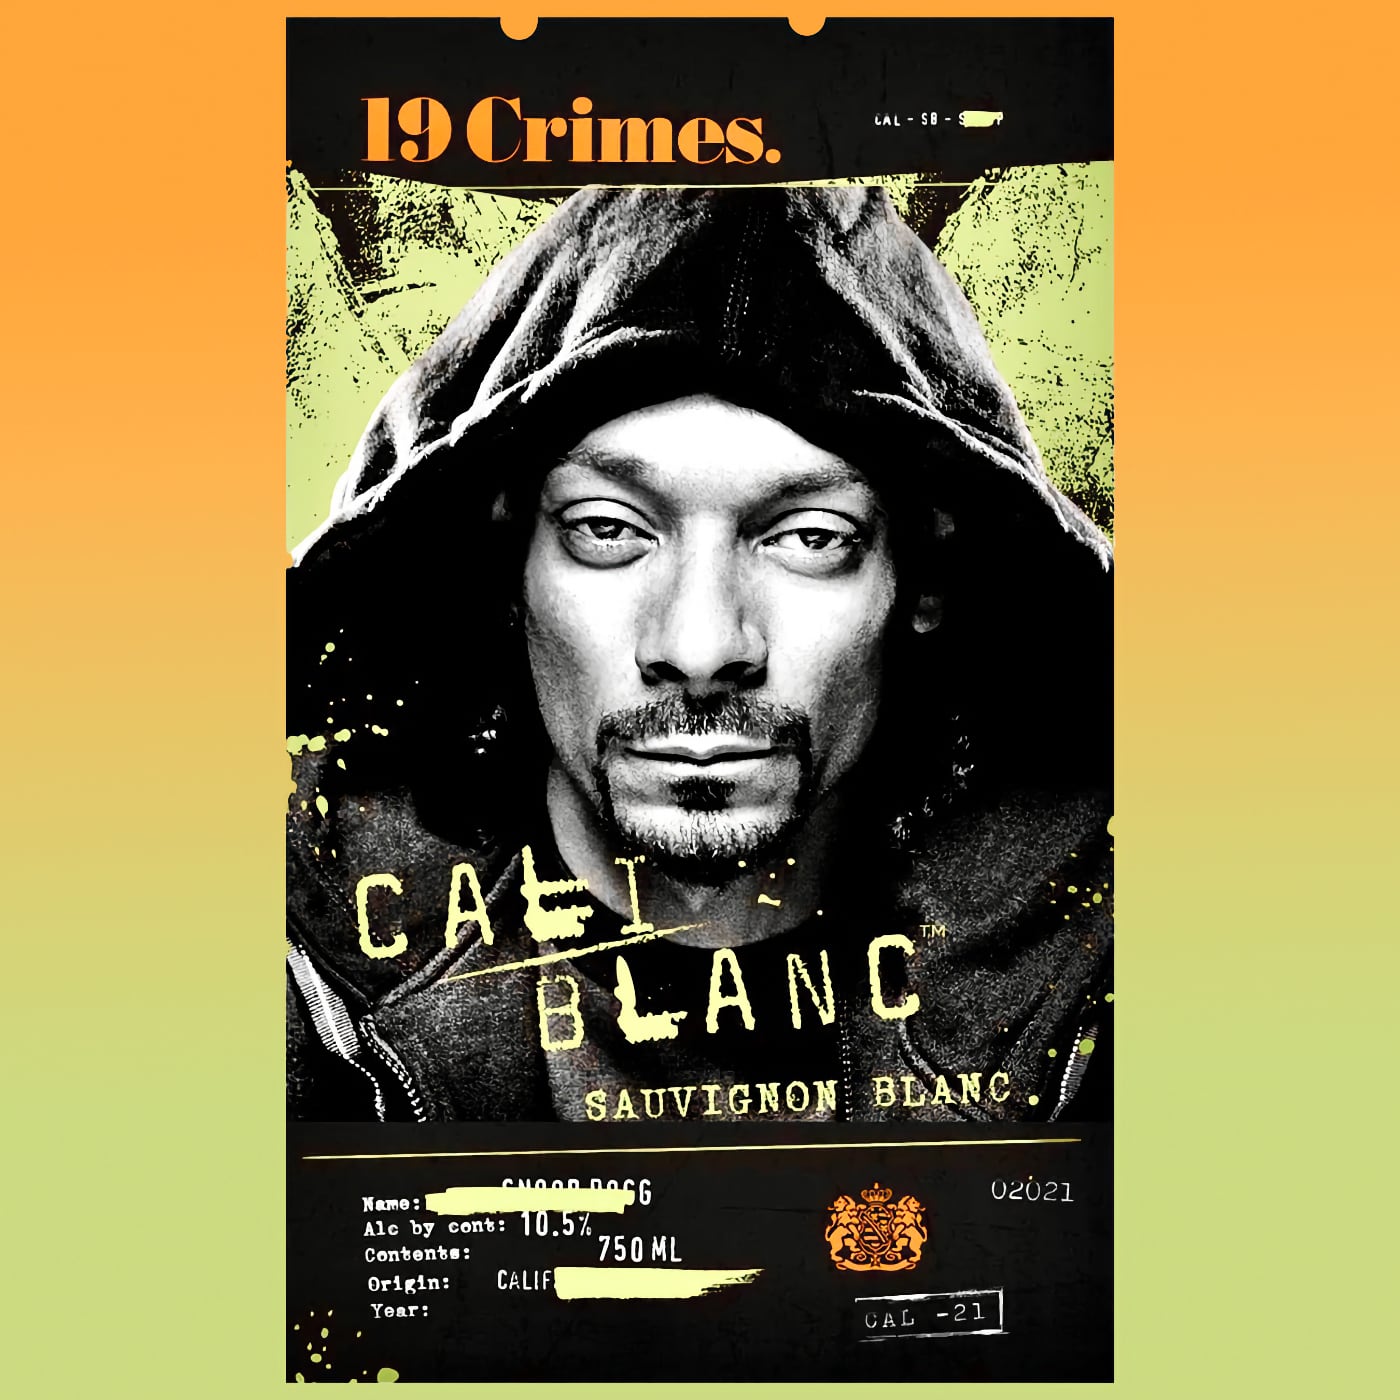 19 Crimes Snoop Dogg Cali Blanc 2021